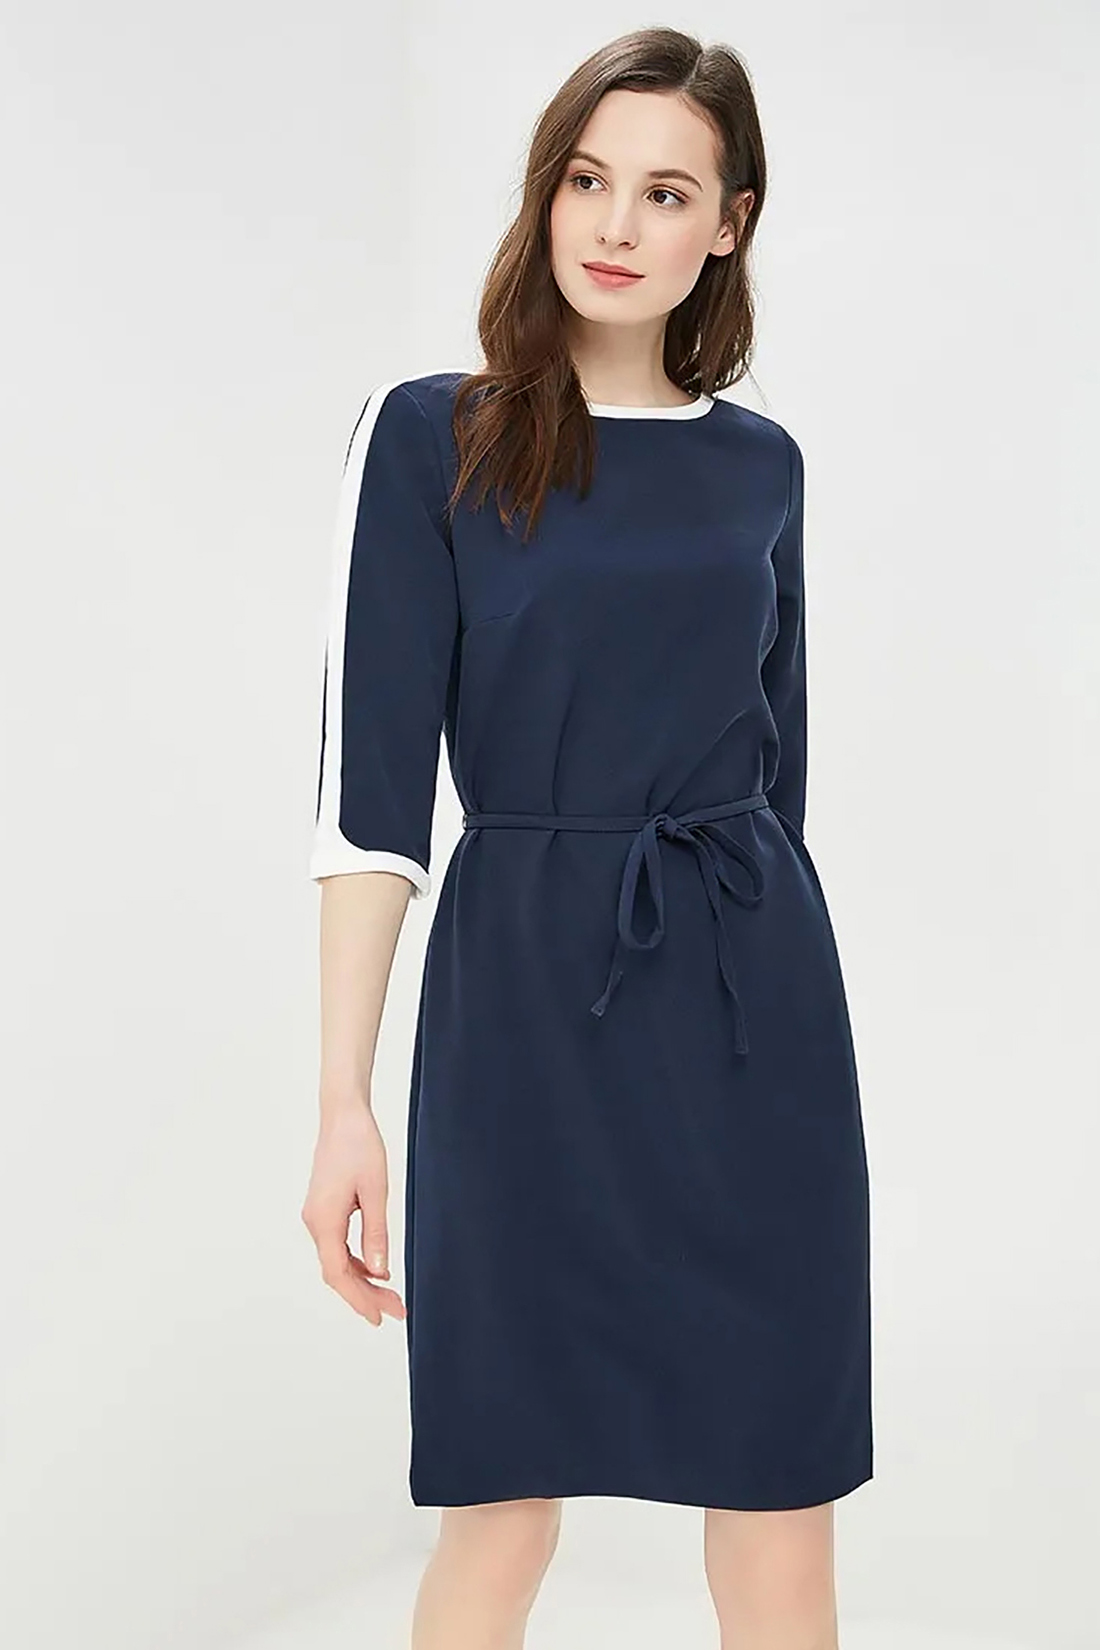 Платье с белой отделкой (арт. baon B459030), размер M, цвет синий Платье с белой отделкой (арт. baon B459030) - фото 3